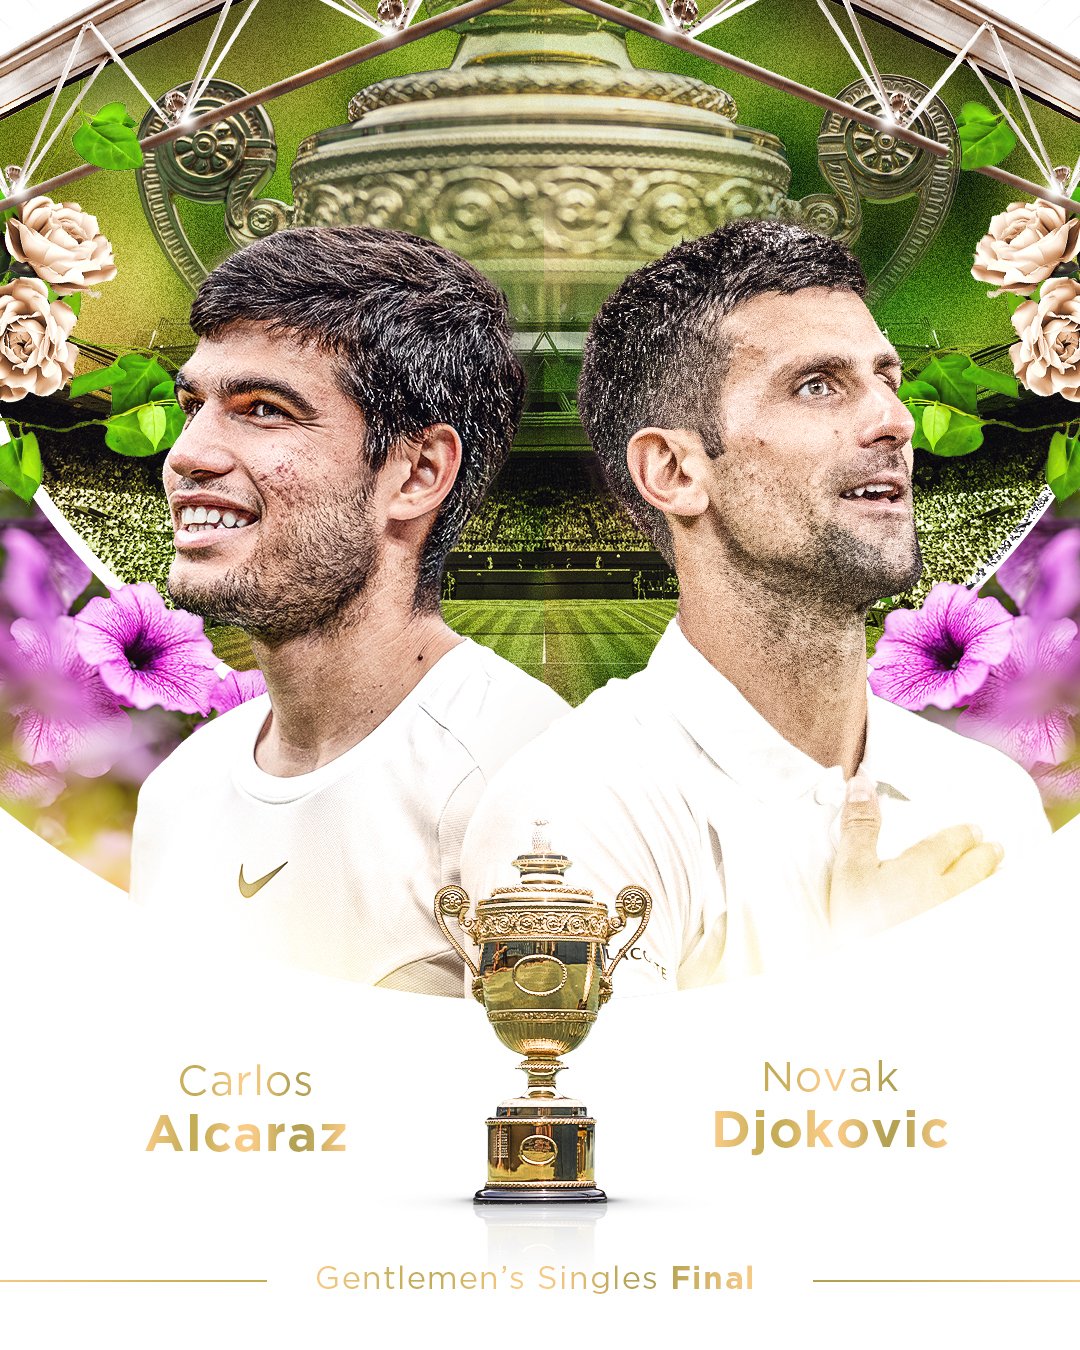 Novak Djokovic sẽ là thử thách lớn nhất của Alcaraz trên hành trình tìm kiếm chức vô địch Wimbledon. Ảnh: Wimbledon